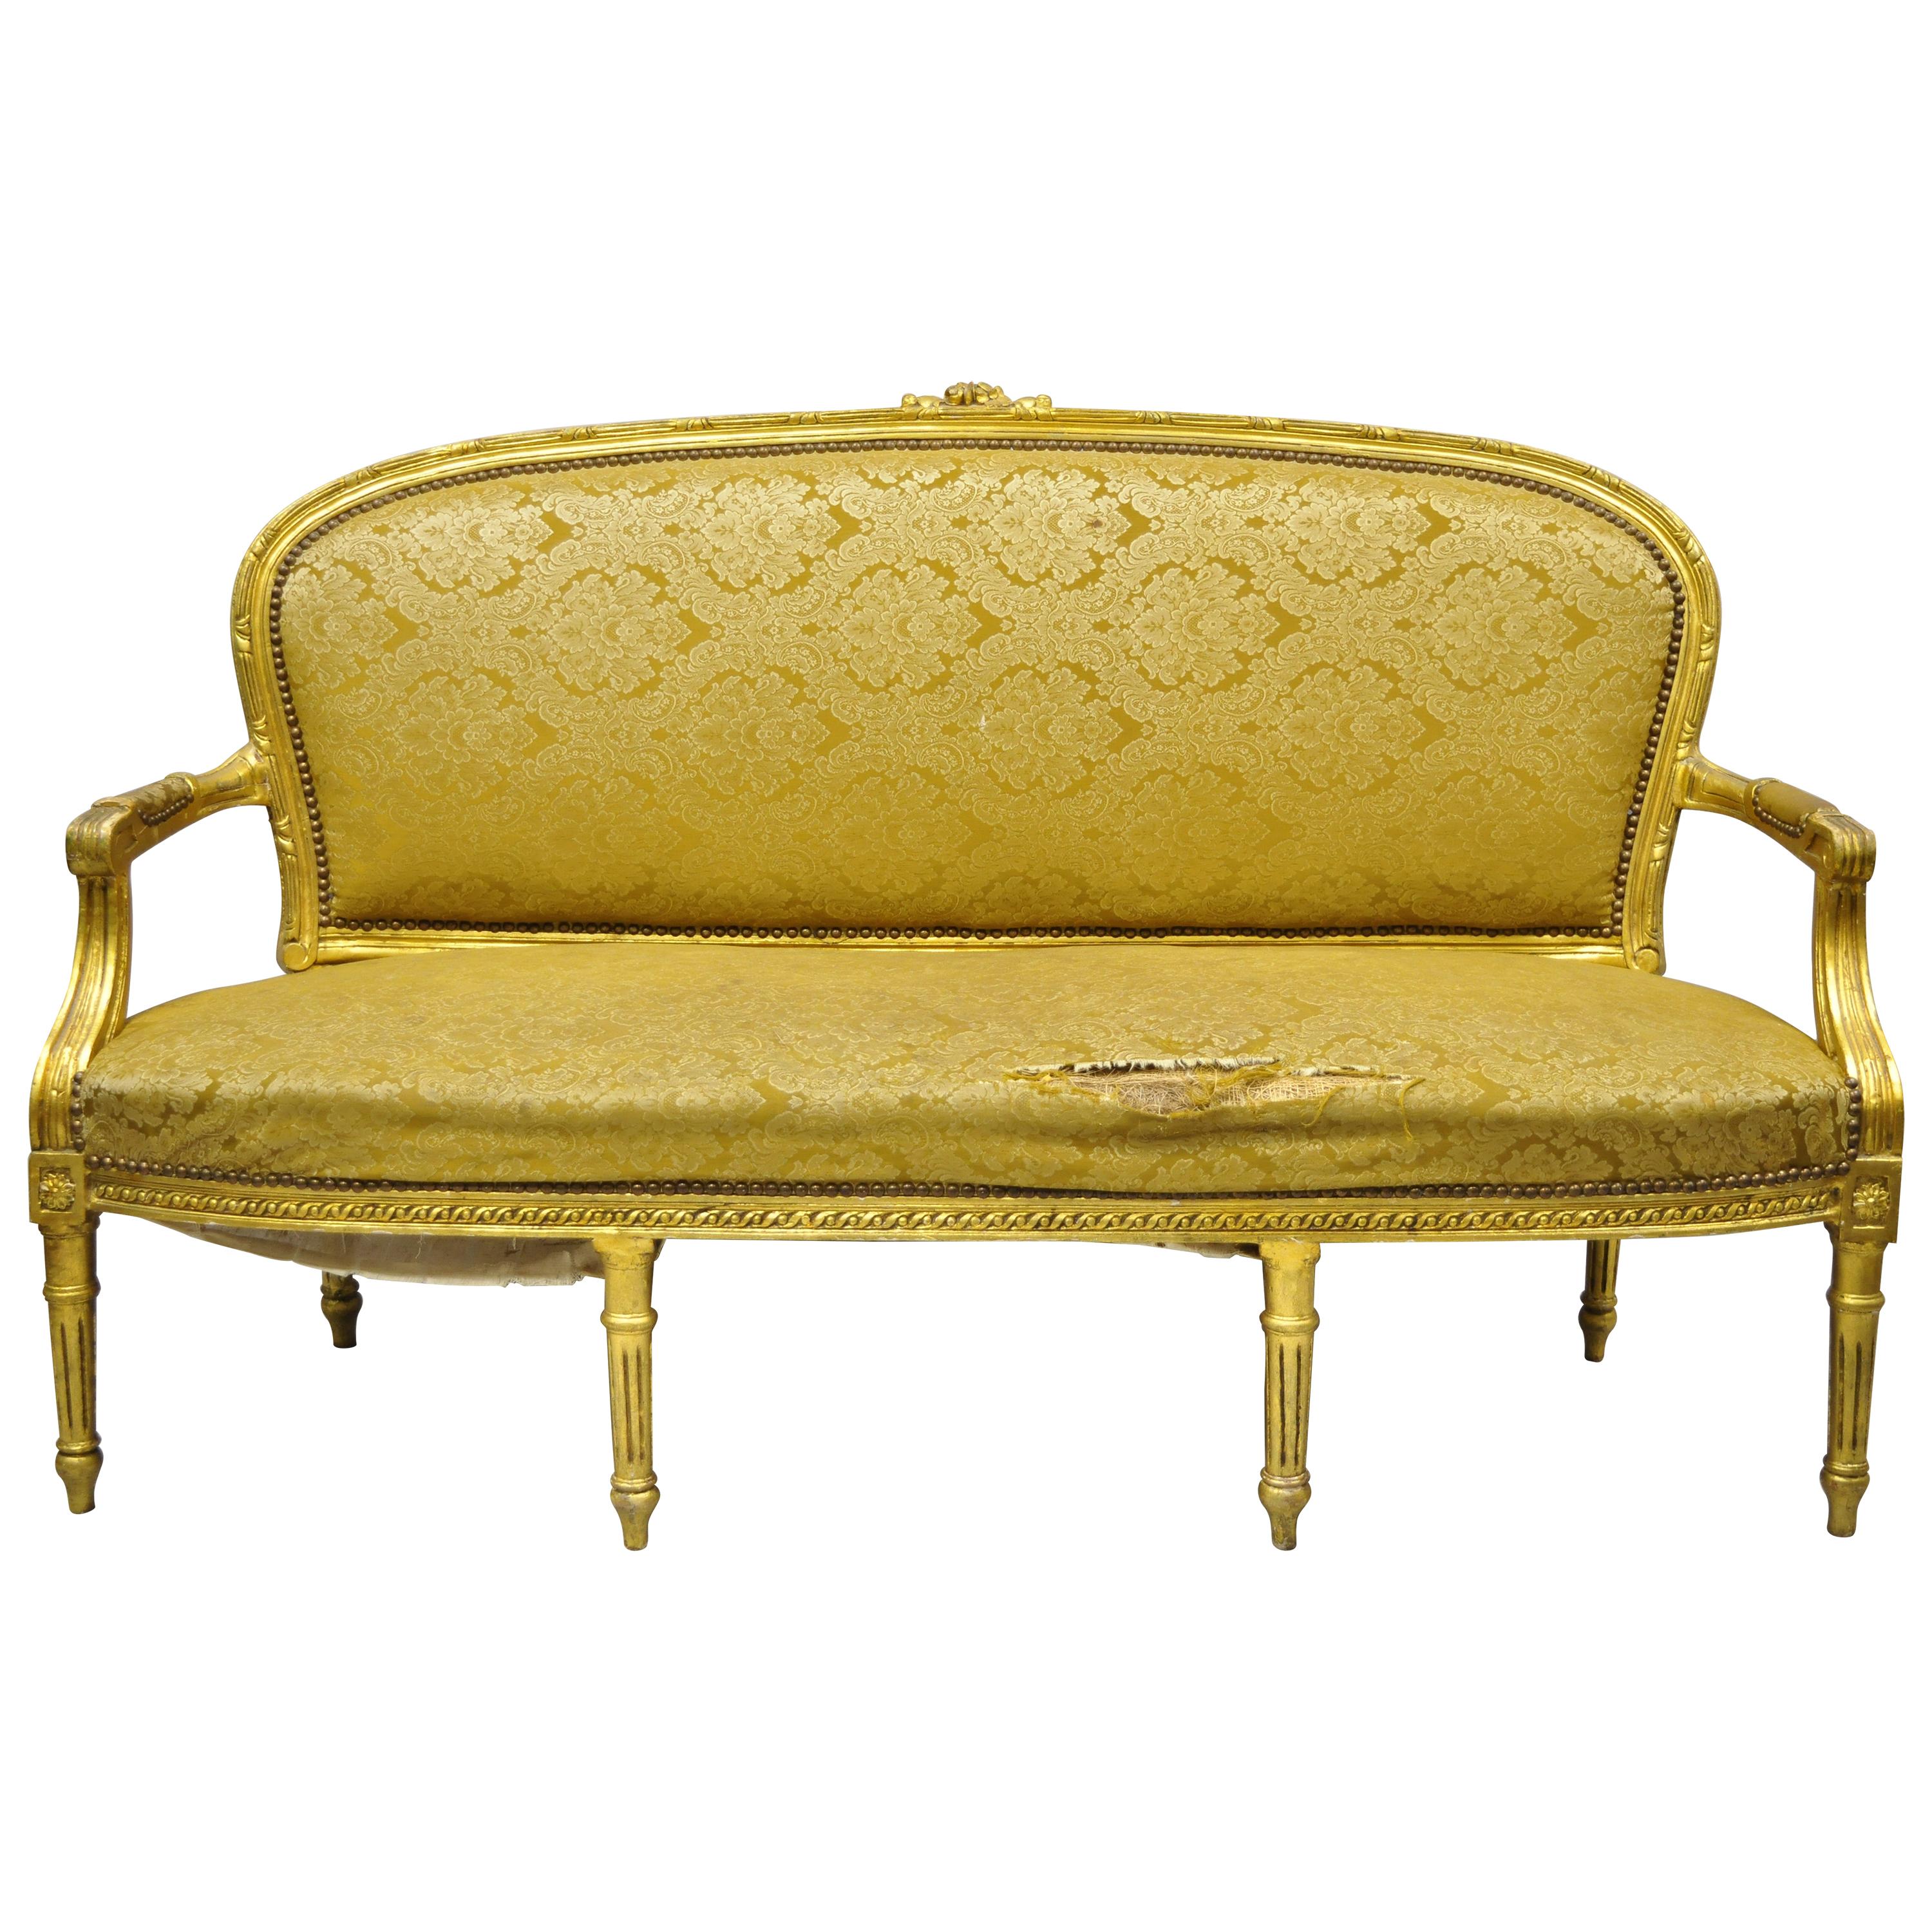 Canapé Loveseat de style Louis XVI français à 6 pieds en feuilles d'or